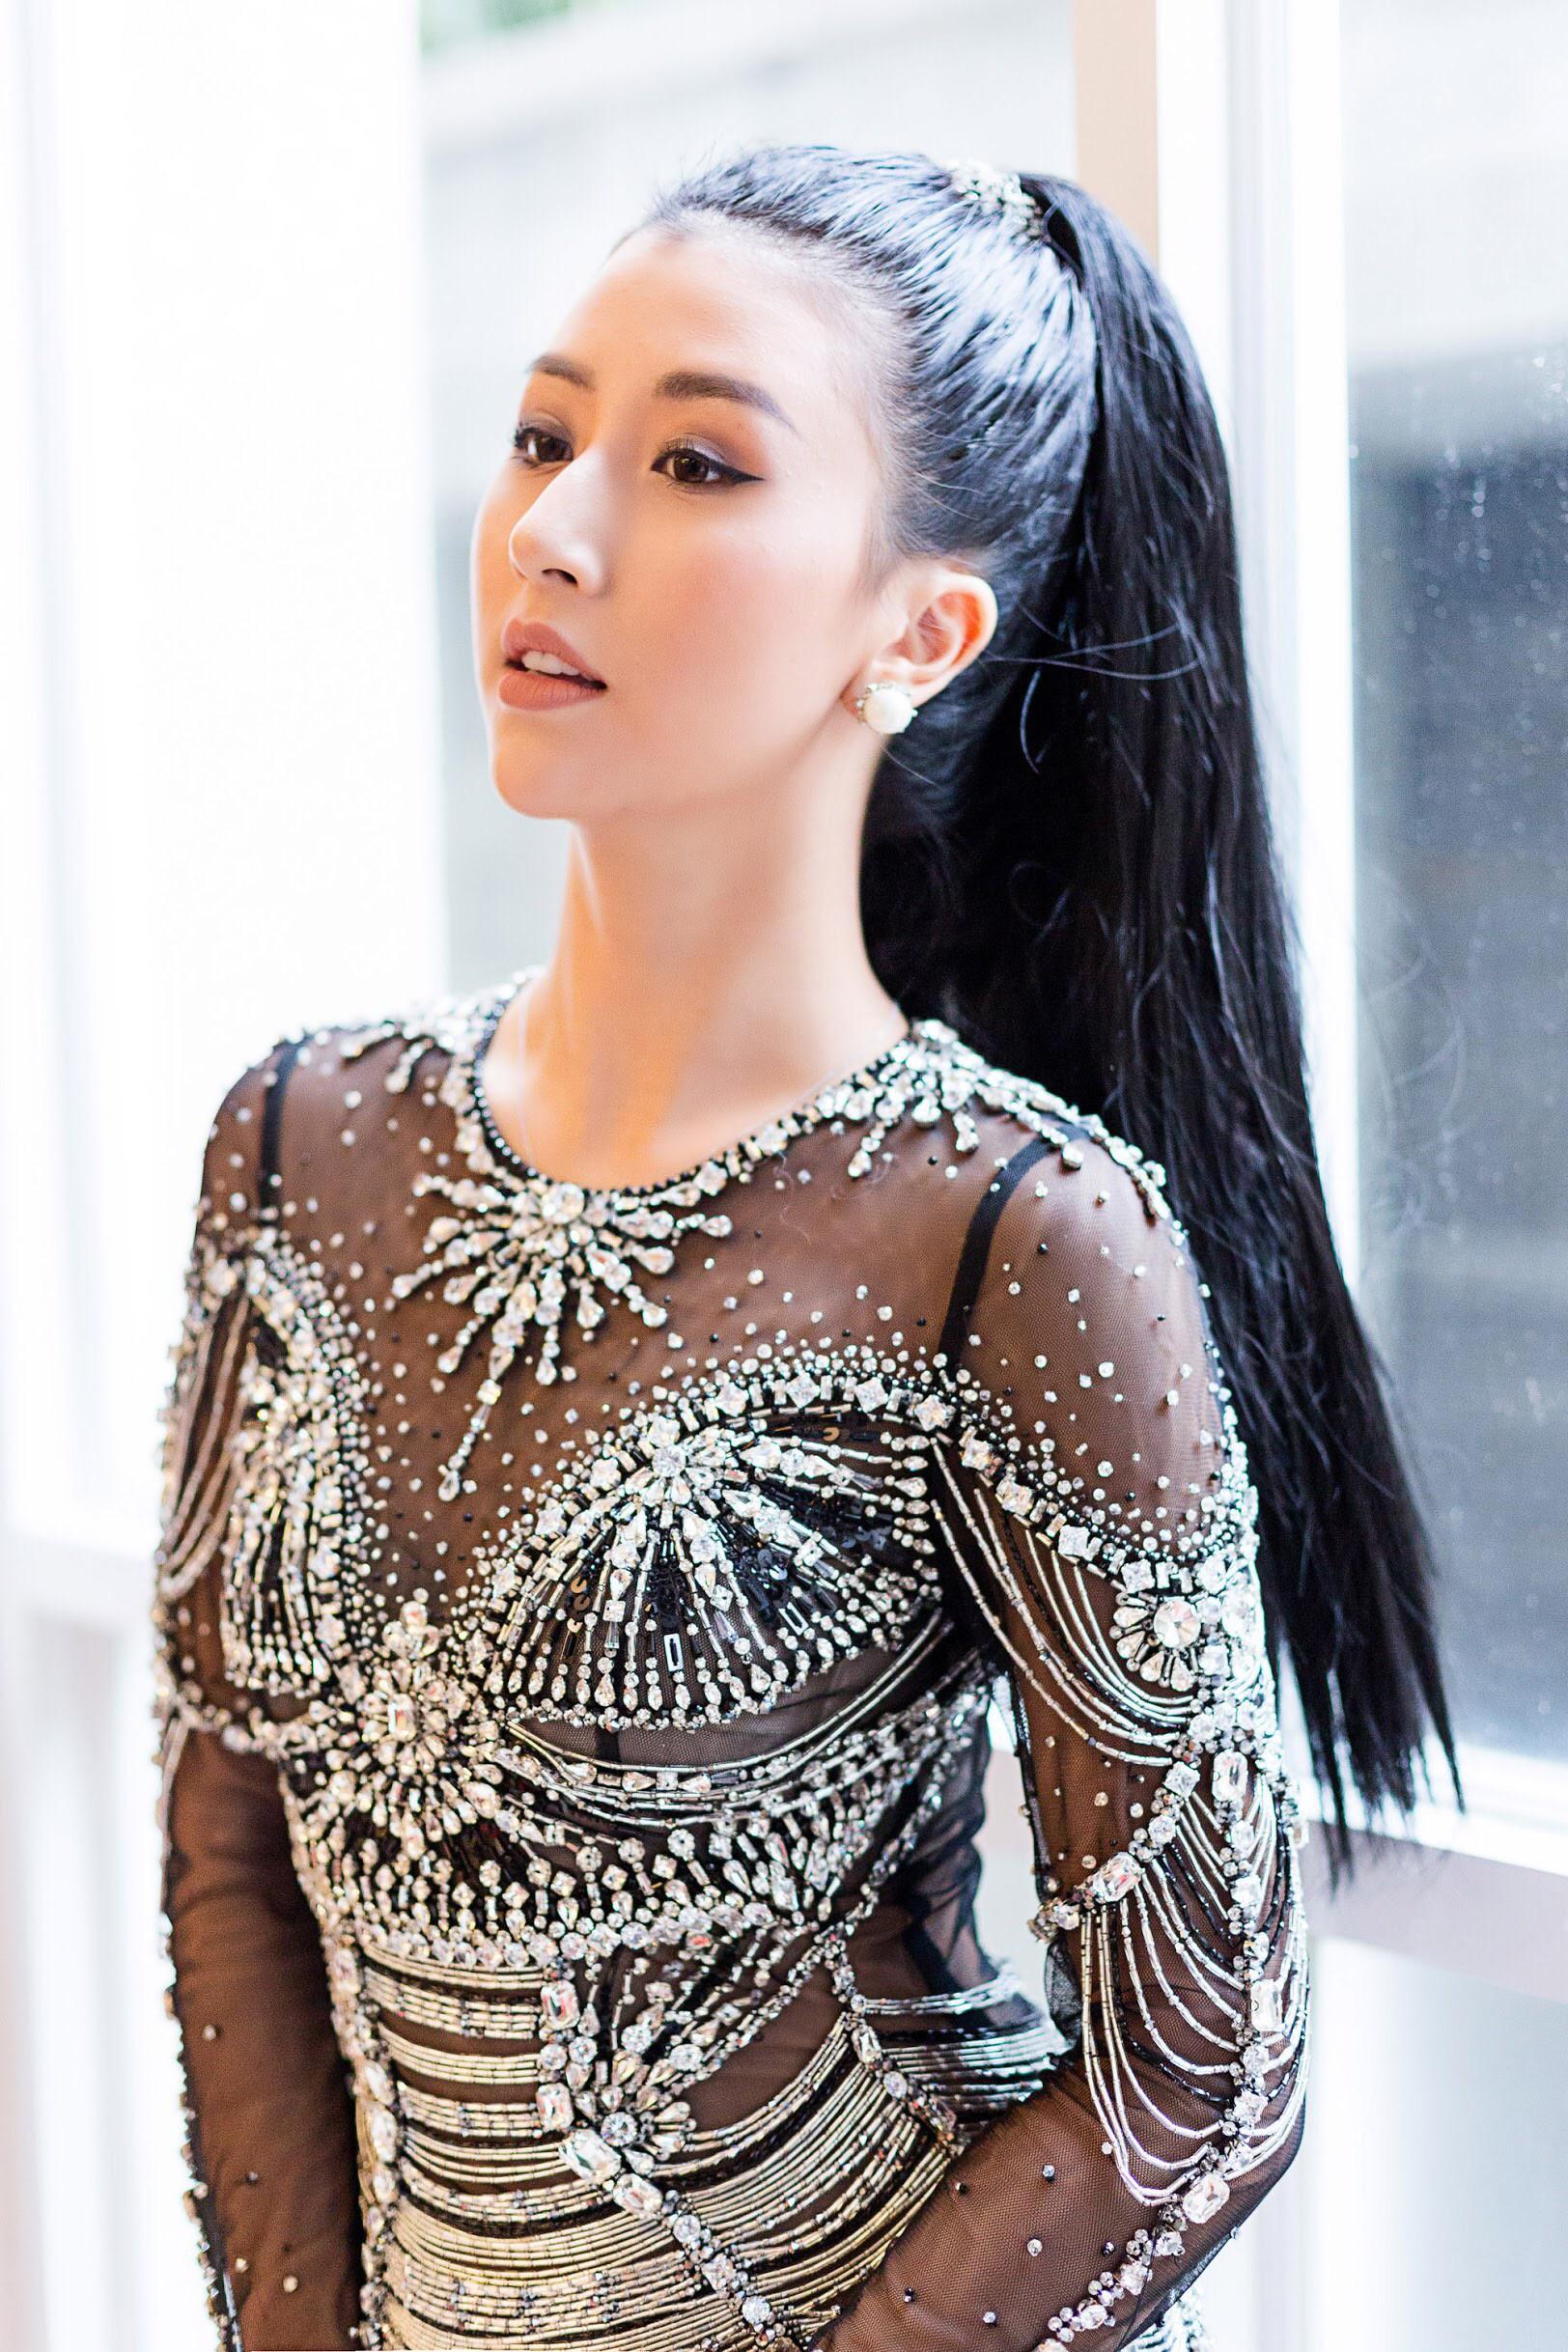 Váy sexy trưởng thành của Quỳnh Anh Shyn hóa ra được diva Thu Minh mặc từ 5 tháng trước-3